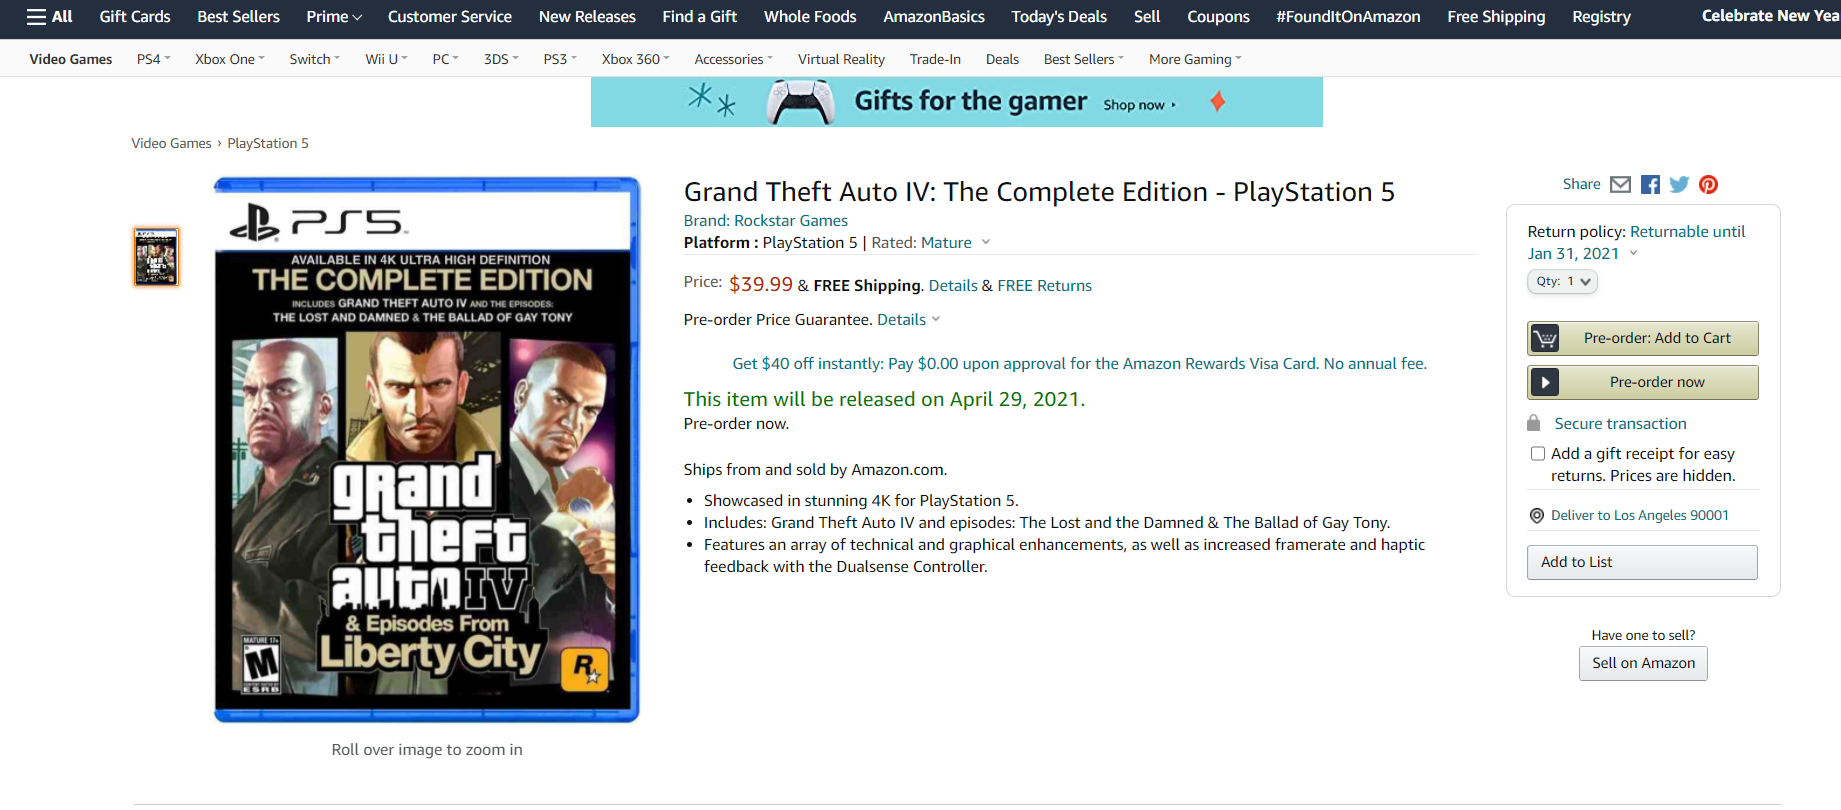 صورة رصد لعبة Grand Theft Auto IV Complete Edition للبلايستيشن5 بموقع امازون